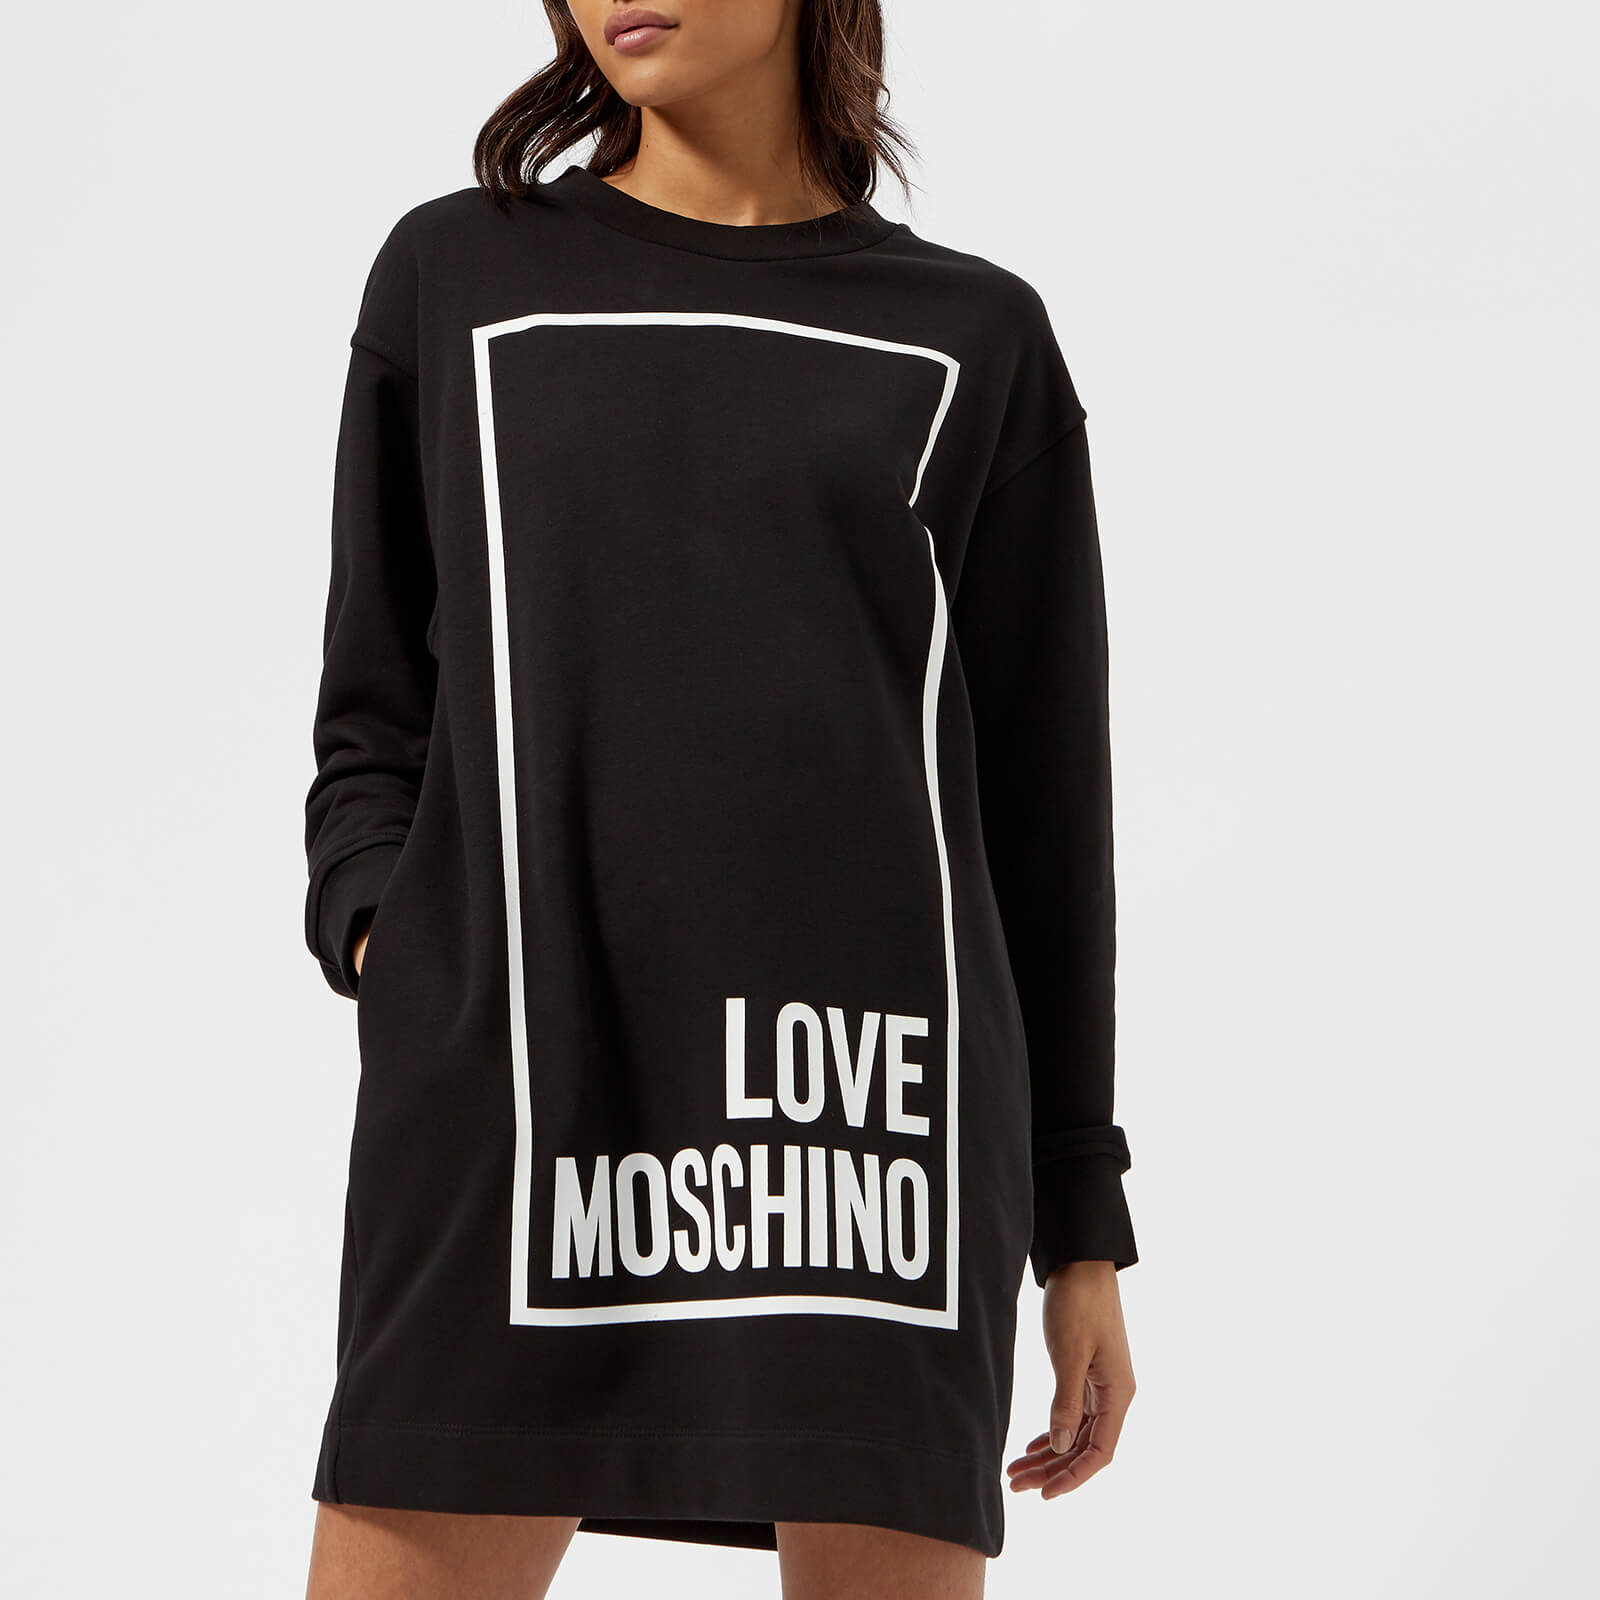 love moschino jumper dress off 60 